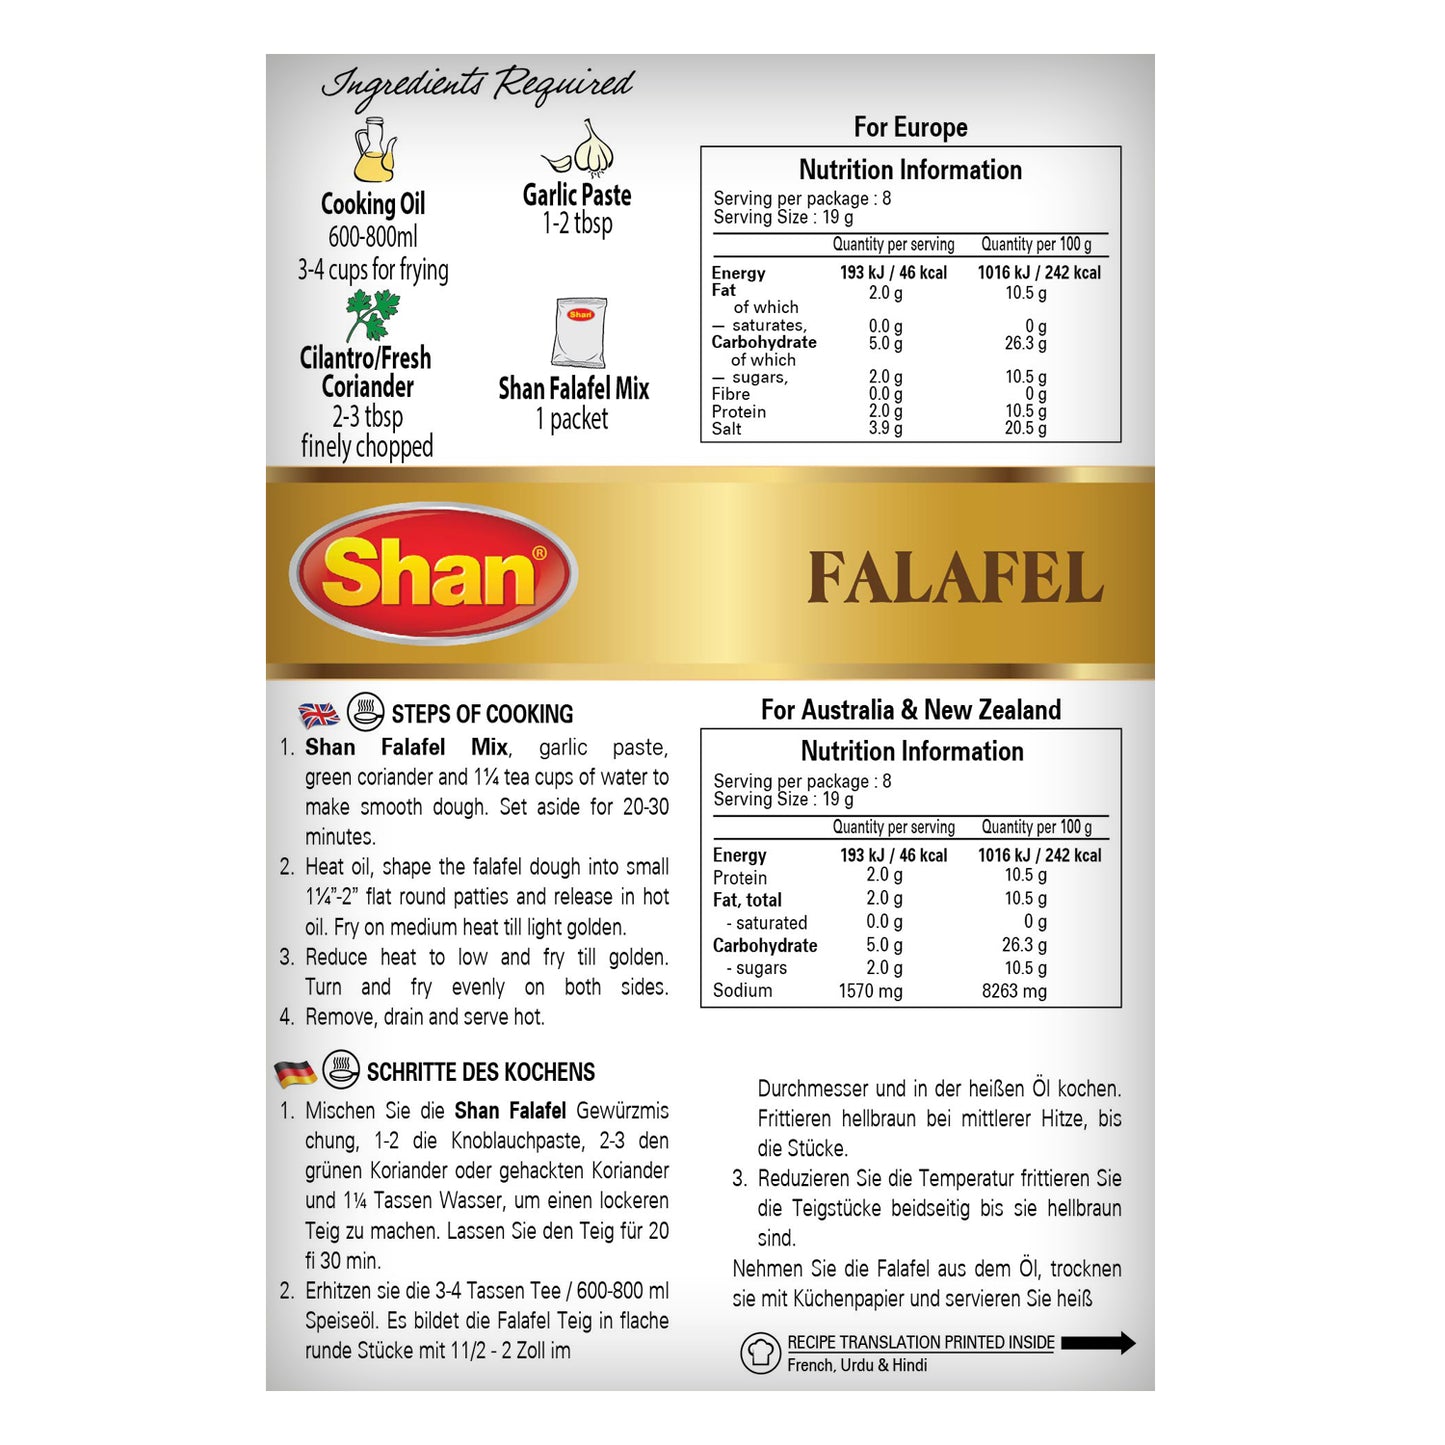 Shan Falafel Arabic Spice Mix 50gm